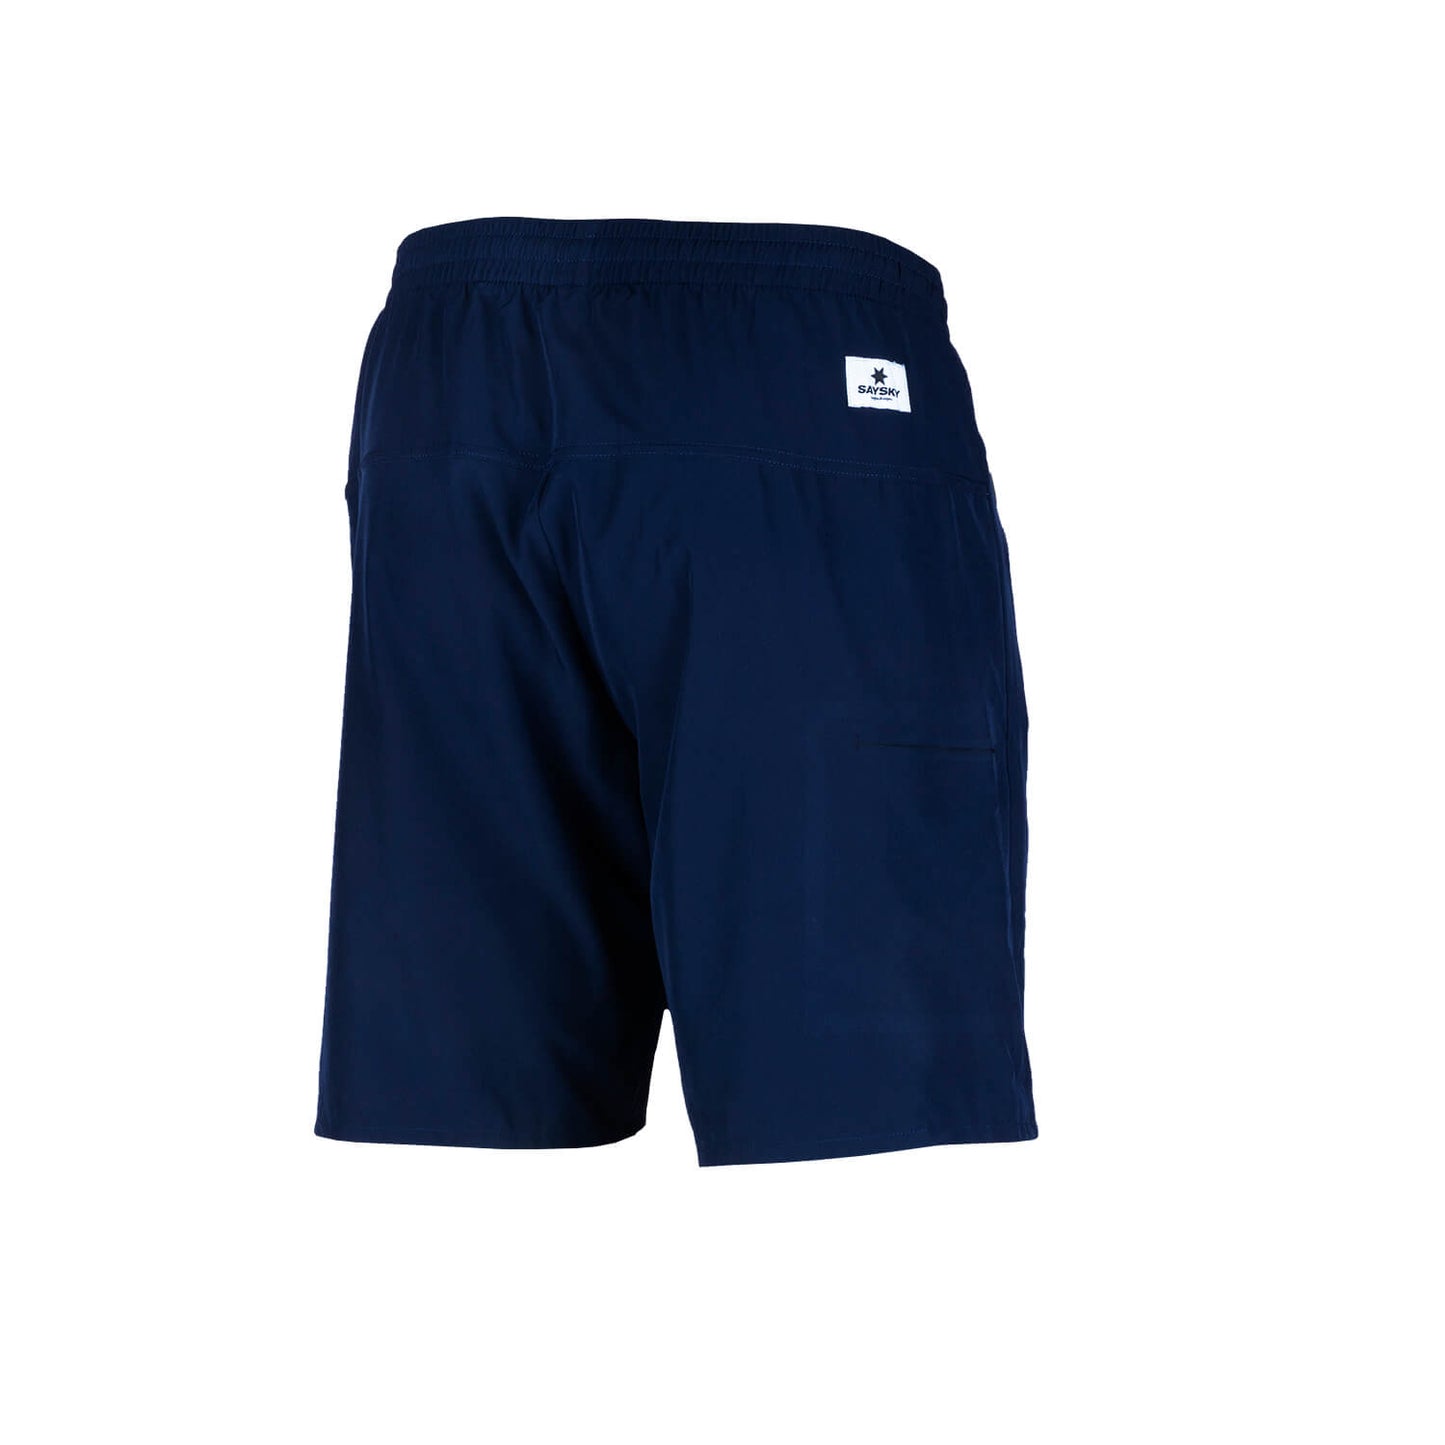 レンジャーショーツ FMRSH16 Ranger Shorts - Maritime Blue [ユニセックス]